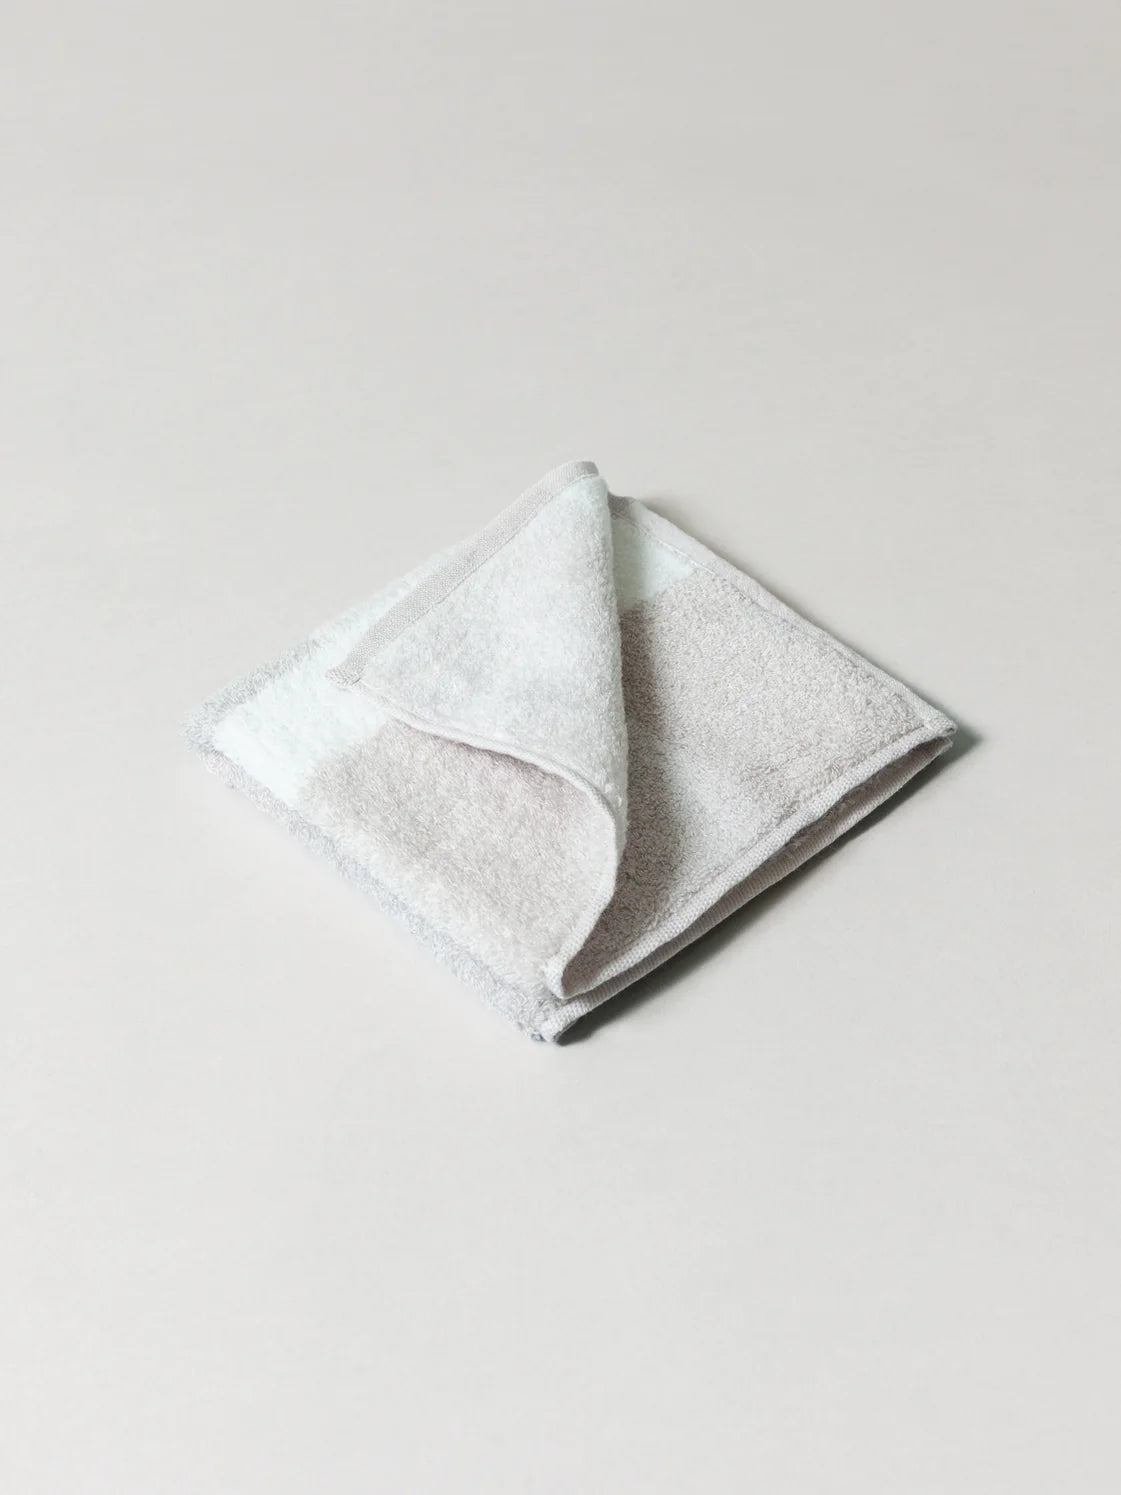 Greige Towel - Morihata